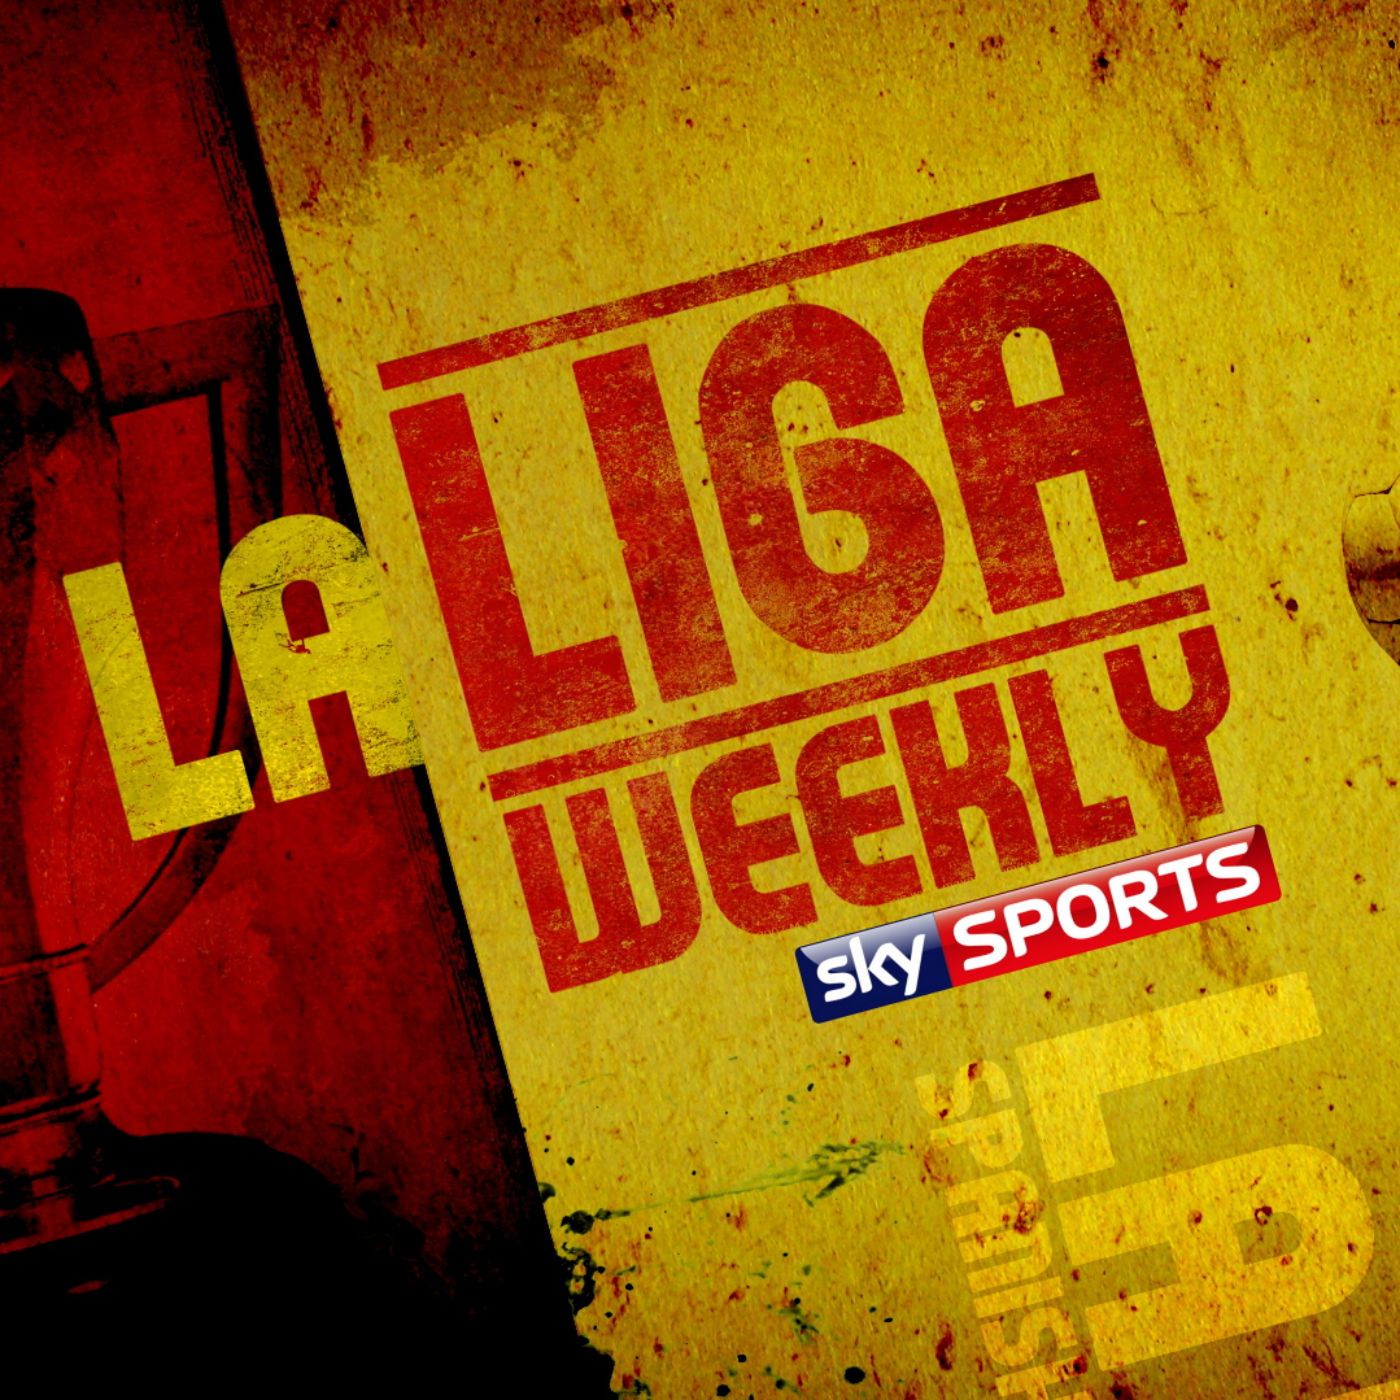 La Liga Weekly - 9th October